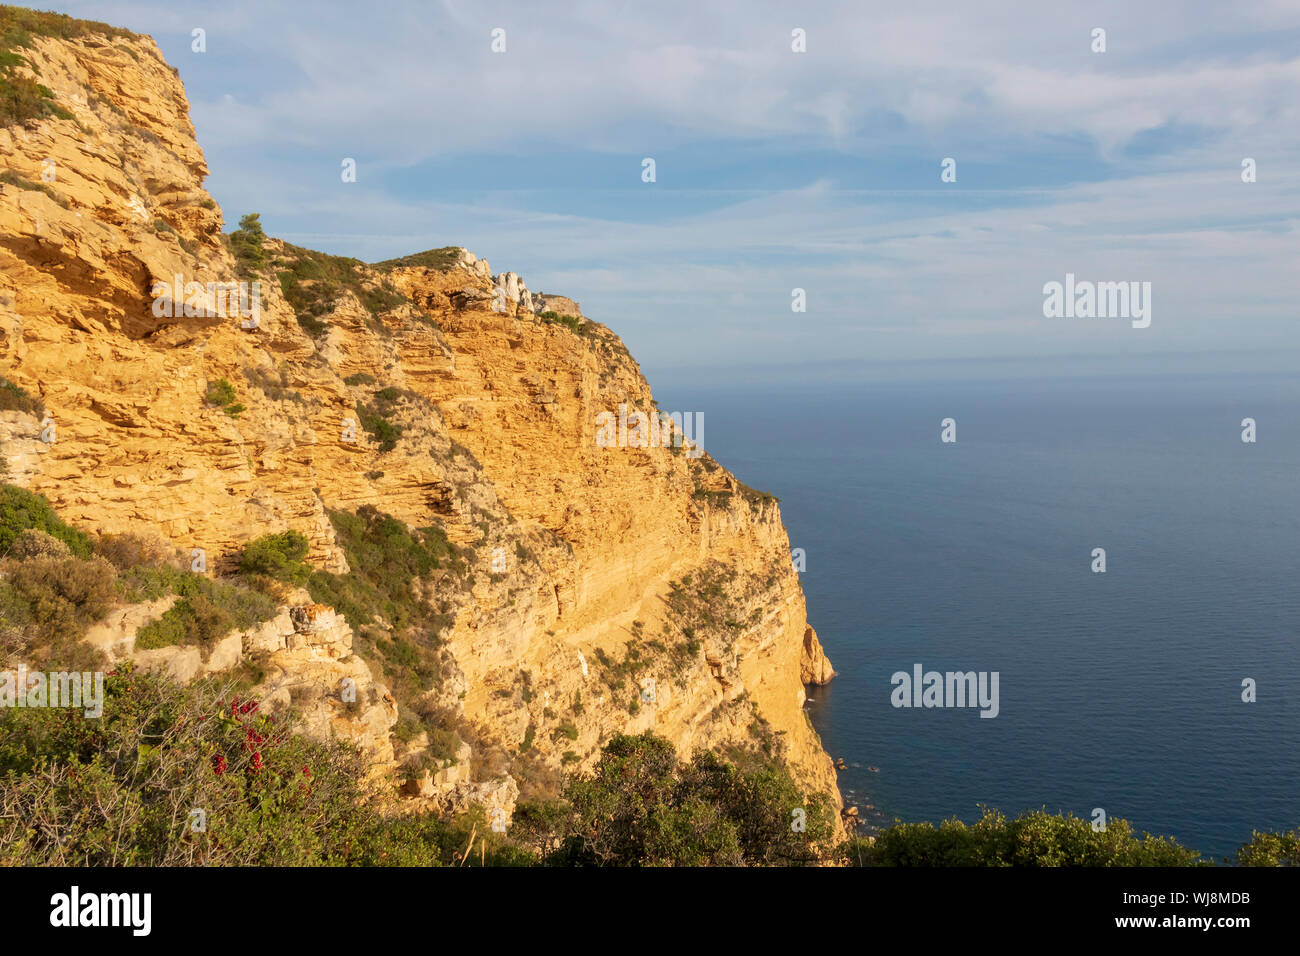 Cap Canaille höchste Steilklippe von Frankreich, ockerfarbenen Sandstein Landspitze auf der Mittelmeer Küste zwischen den Städten Cassis und La Ciotat Stockfoto